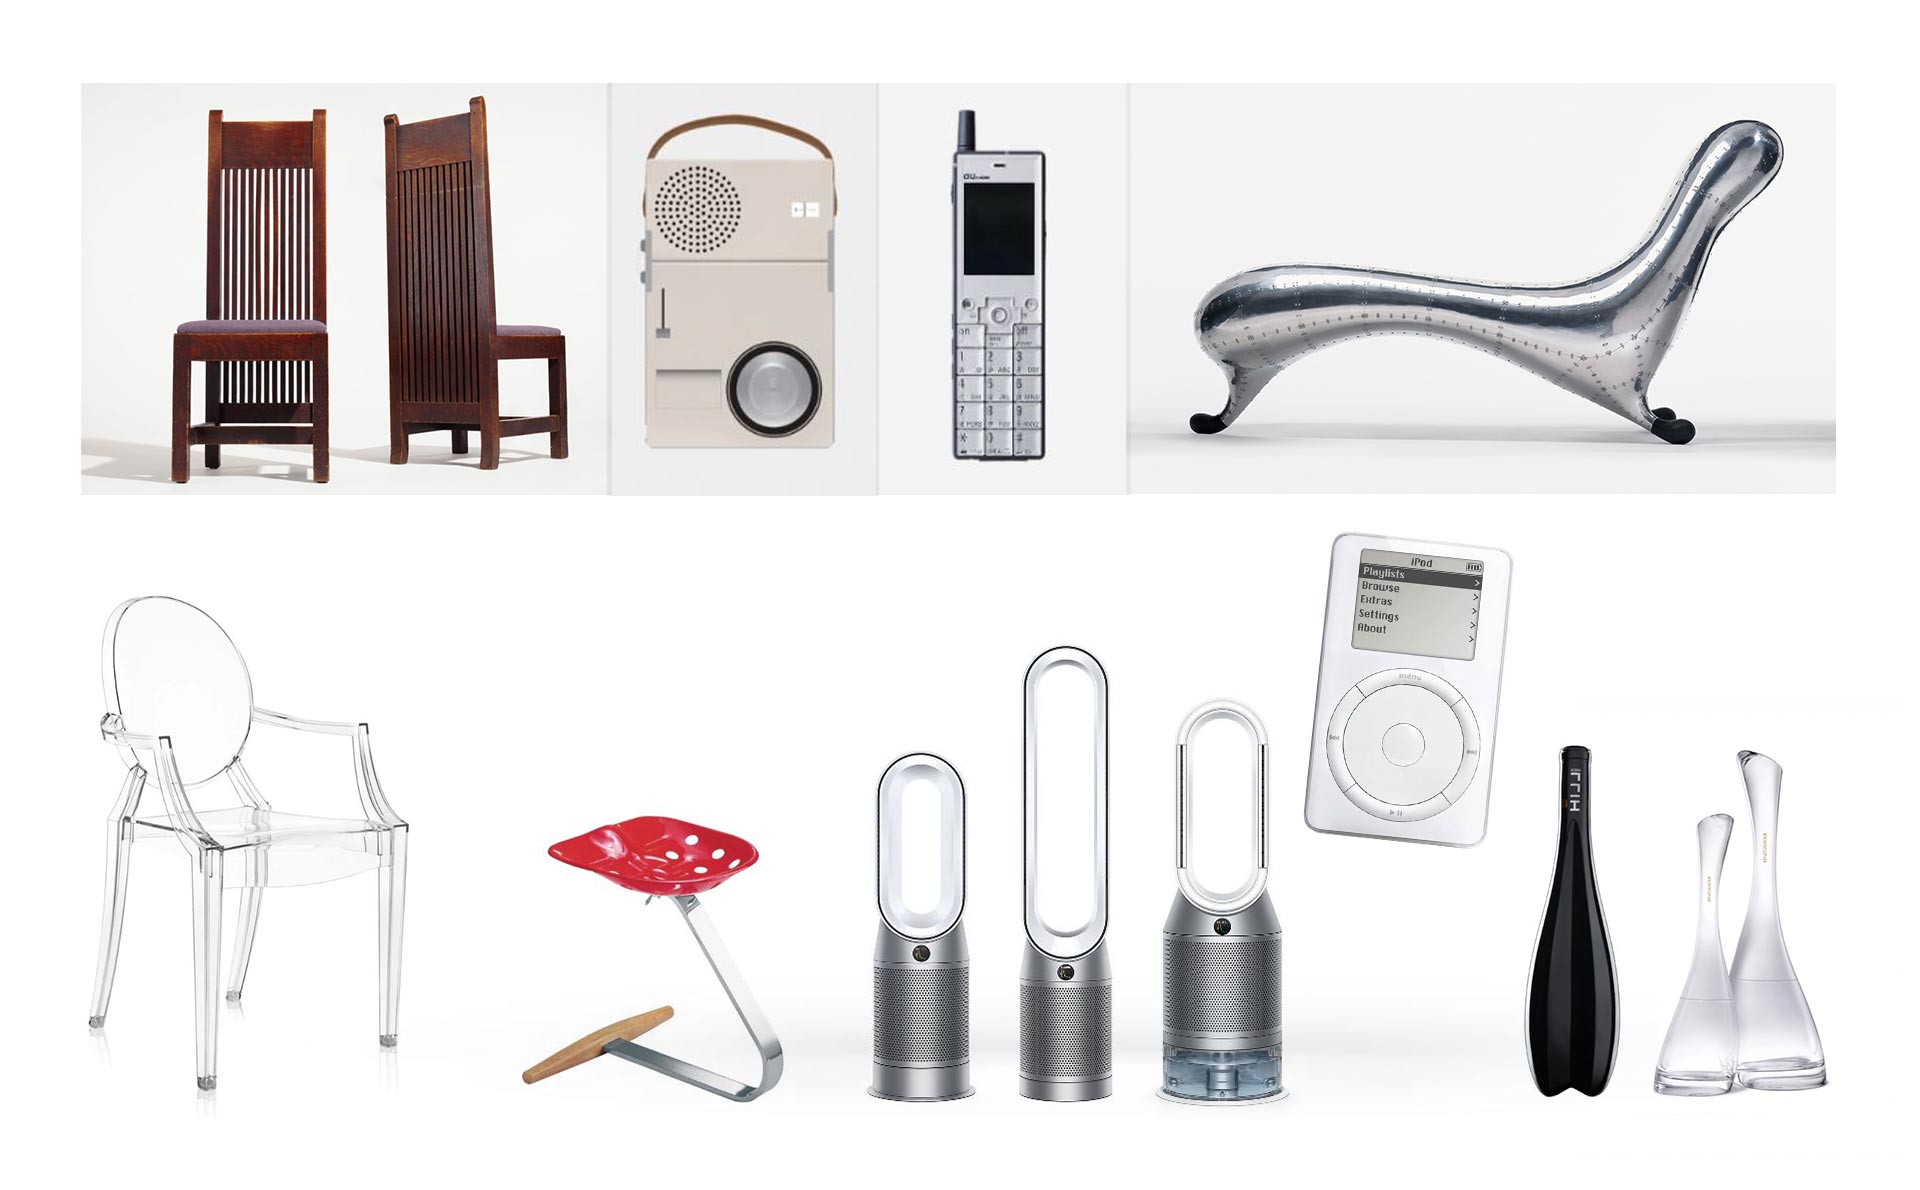 Najpoznatiji proizvodi poput iPod-a, Ghost chair, boca vina, TP 1 radio od najpoznatijih dizajnera.